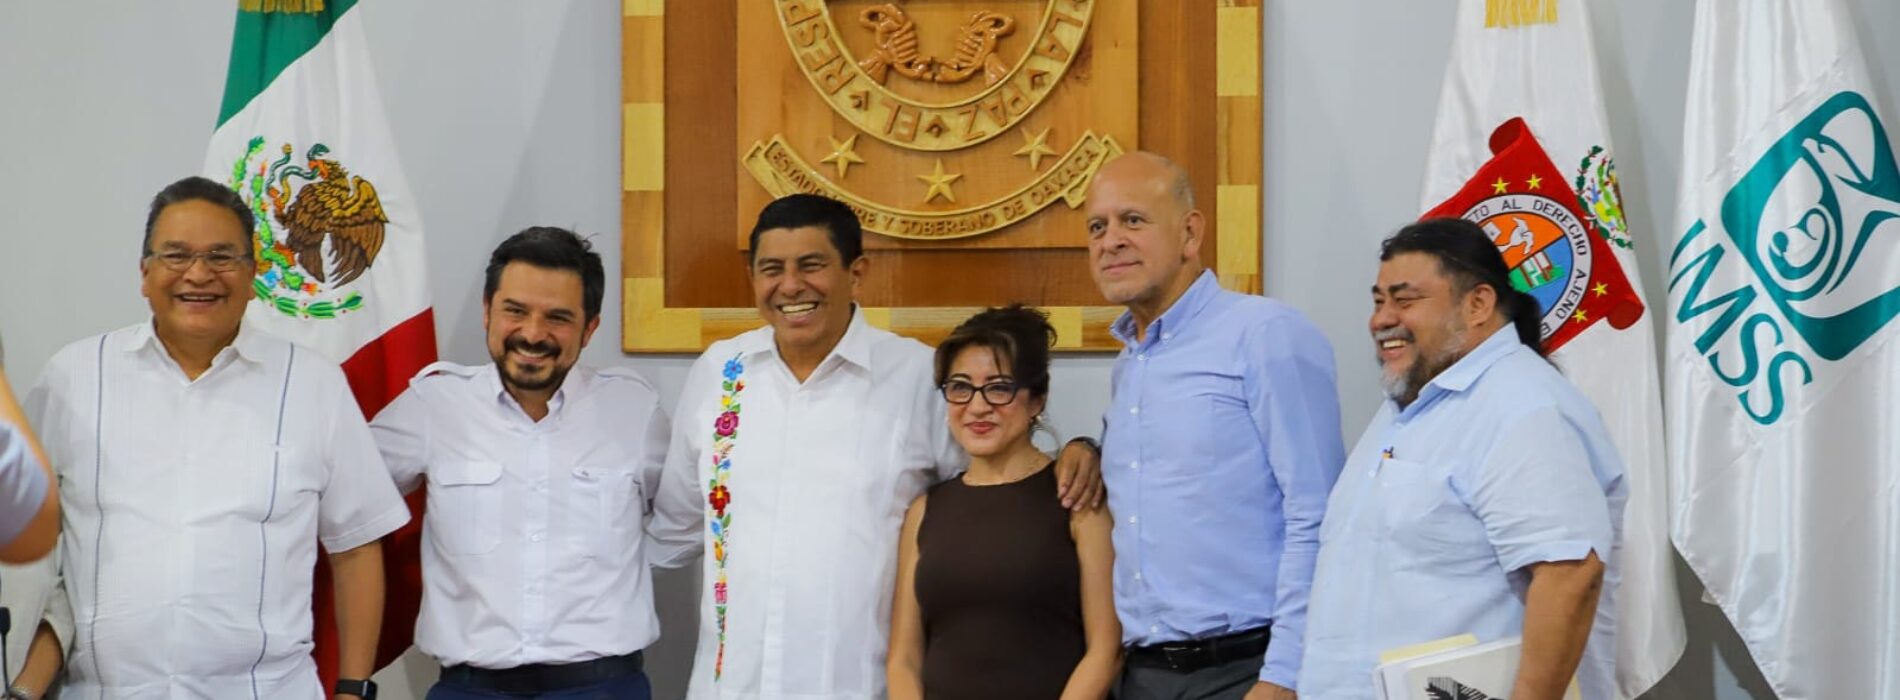 Revisan Salomón Jara y Zoé Robledo avances para integrar Servicios de Salud de Oaxaca a OPD IMSS-Bienestar